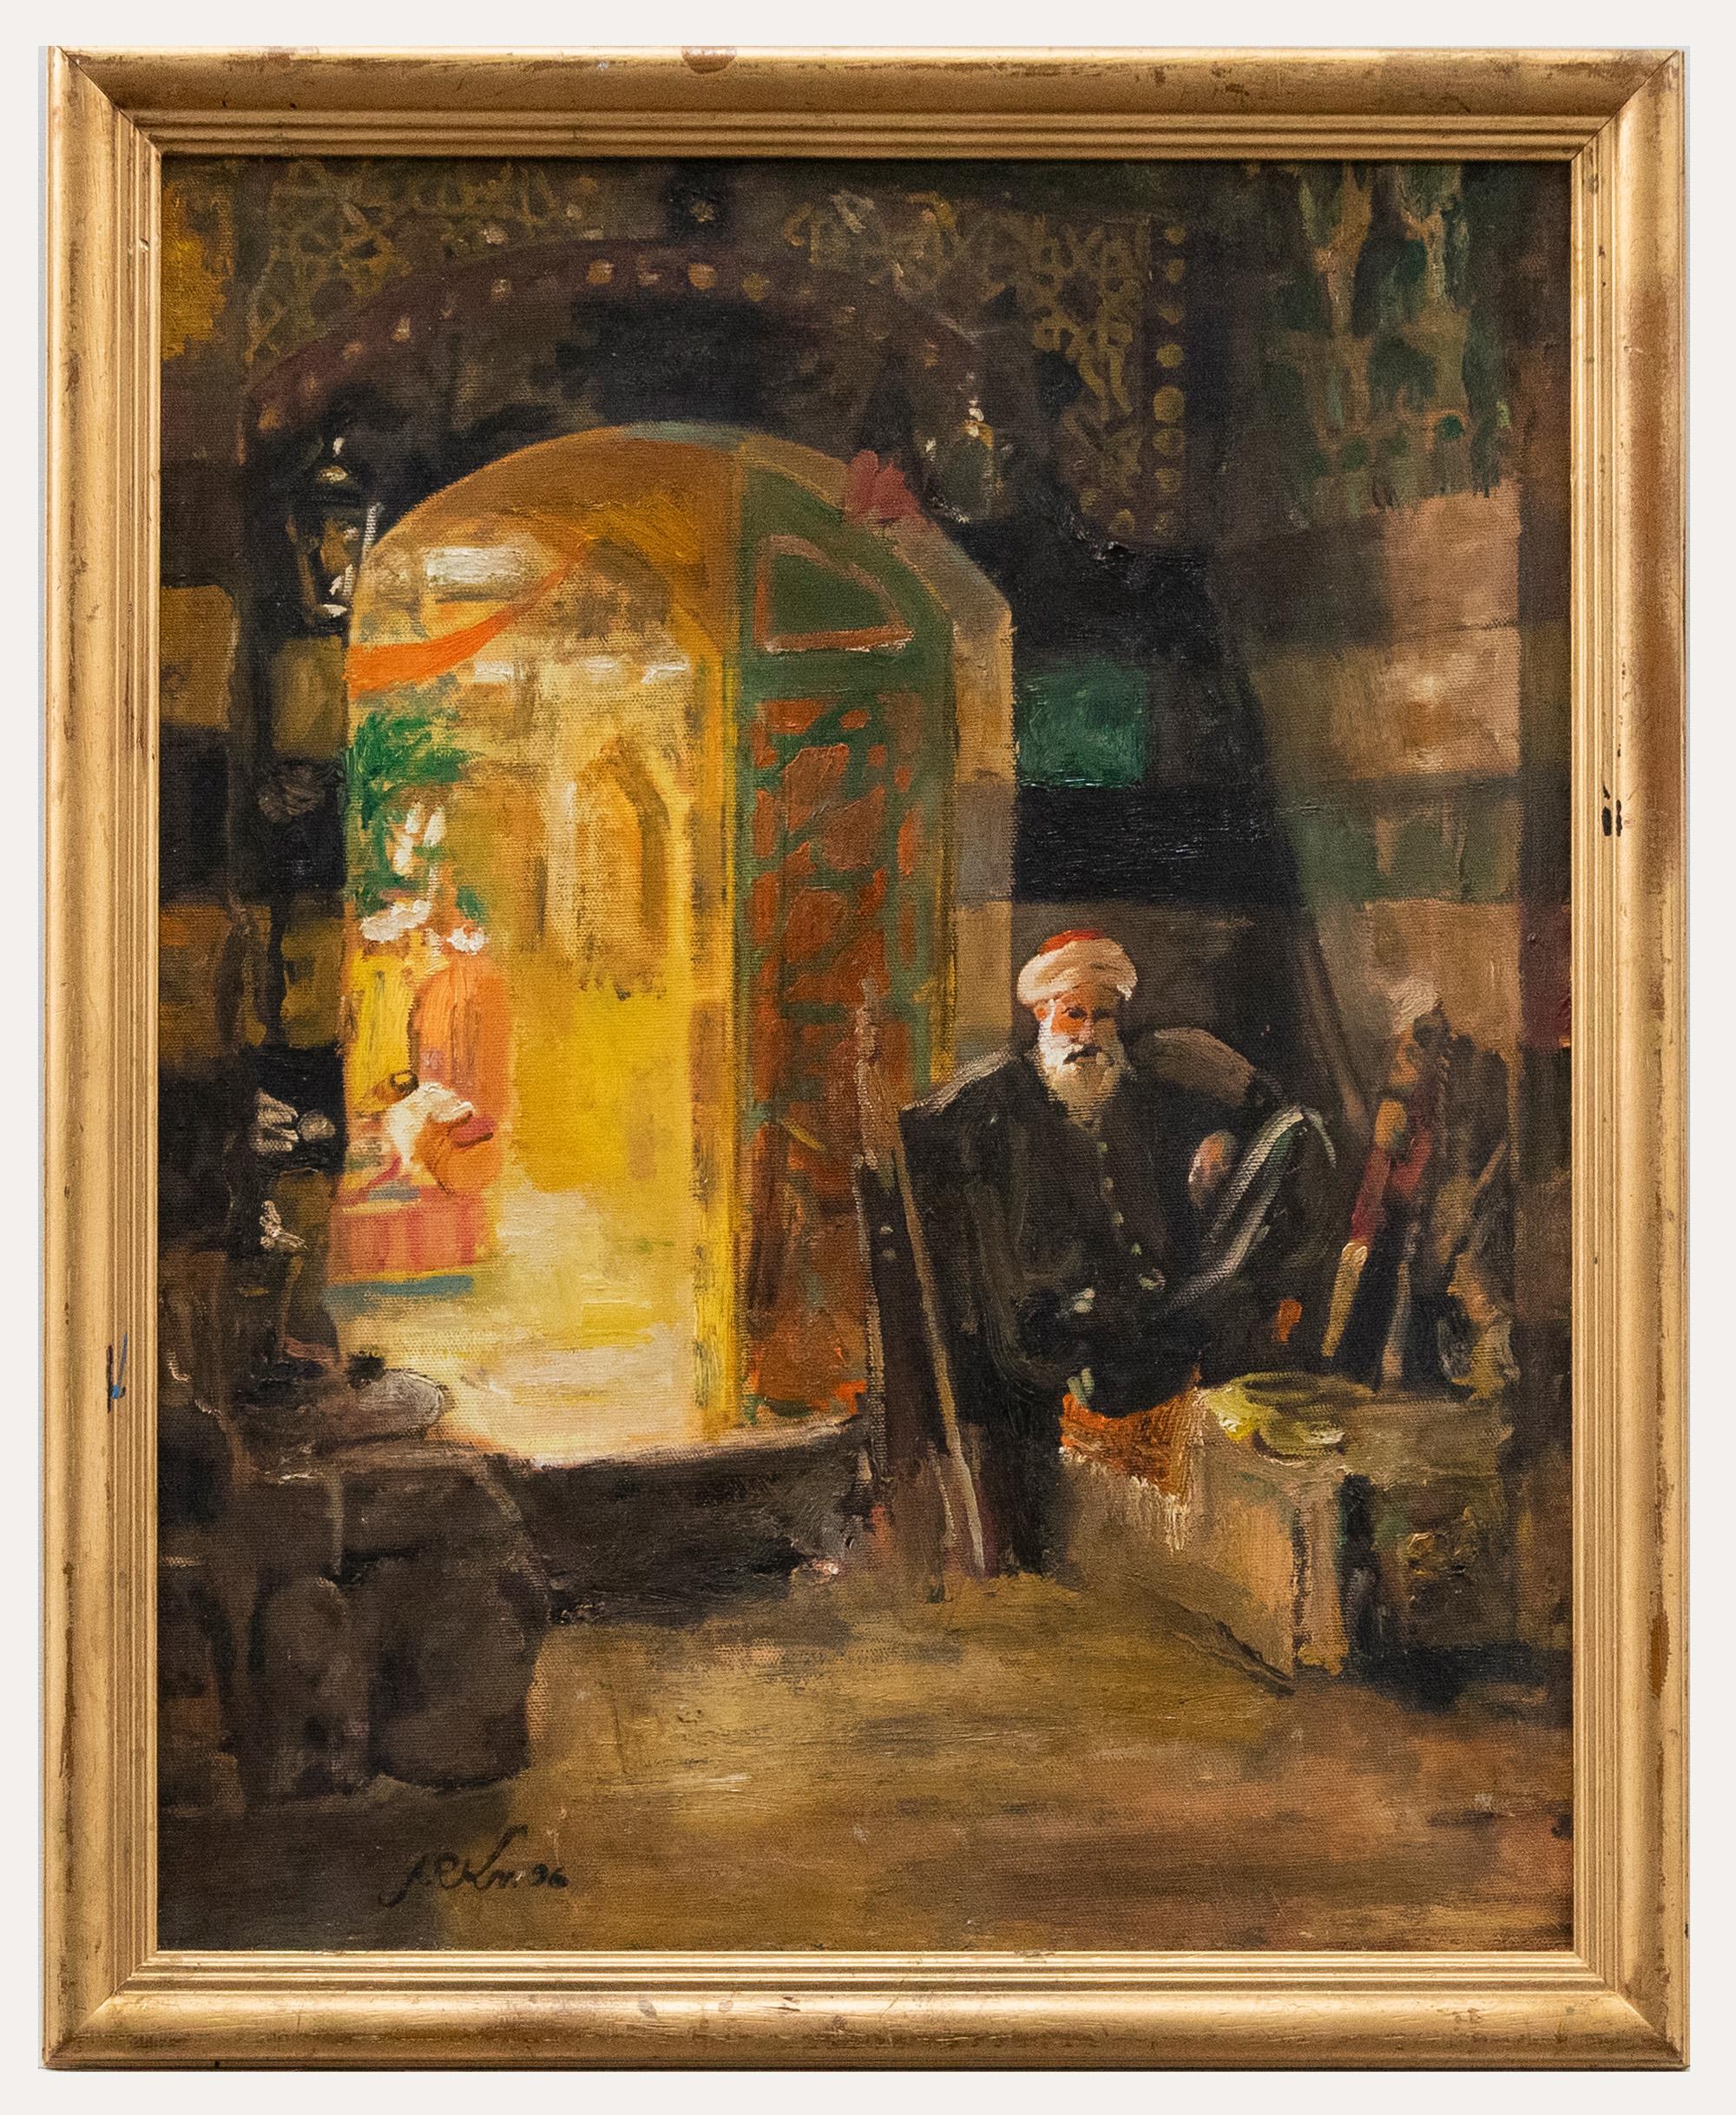 Interior Painting Unknown - Huile contemporaine encadrée - Ancien dans un intérieur oriental